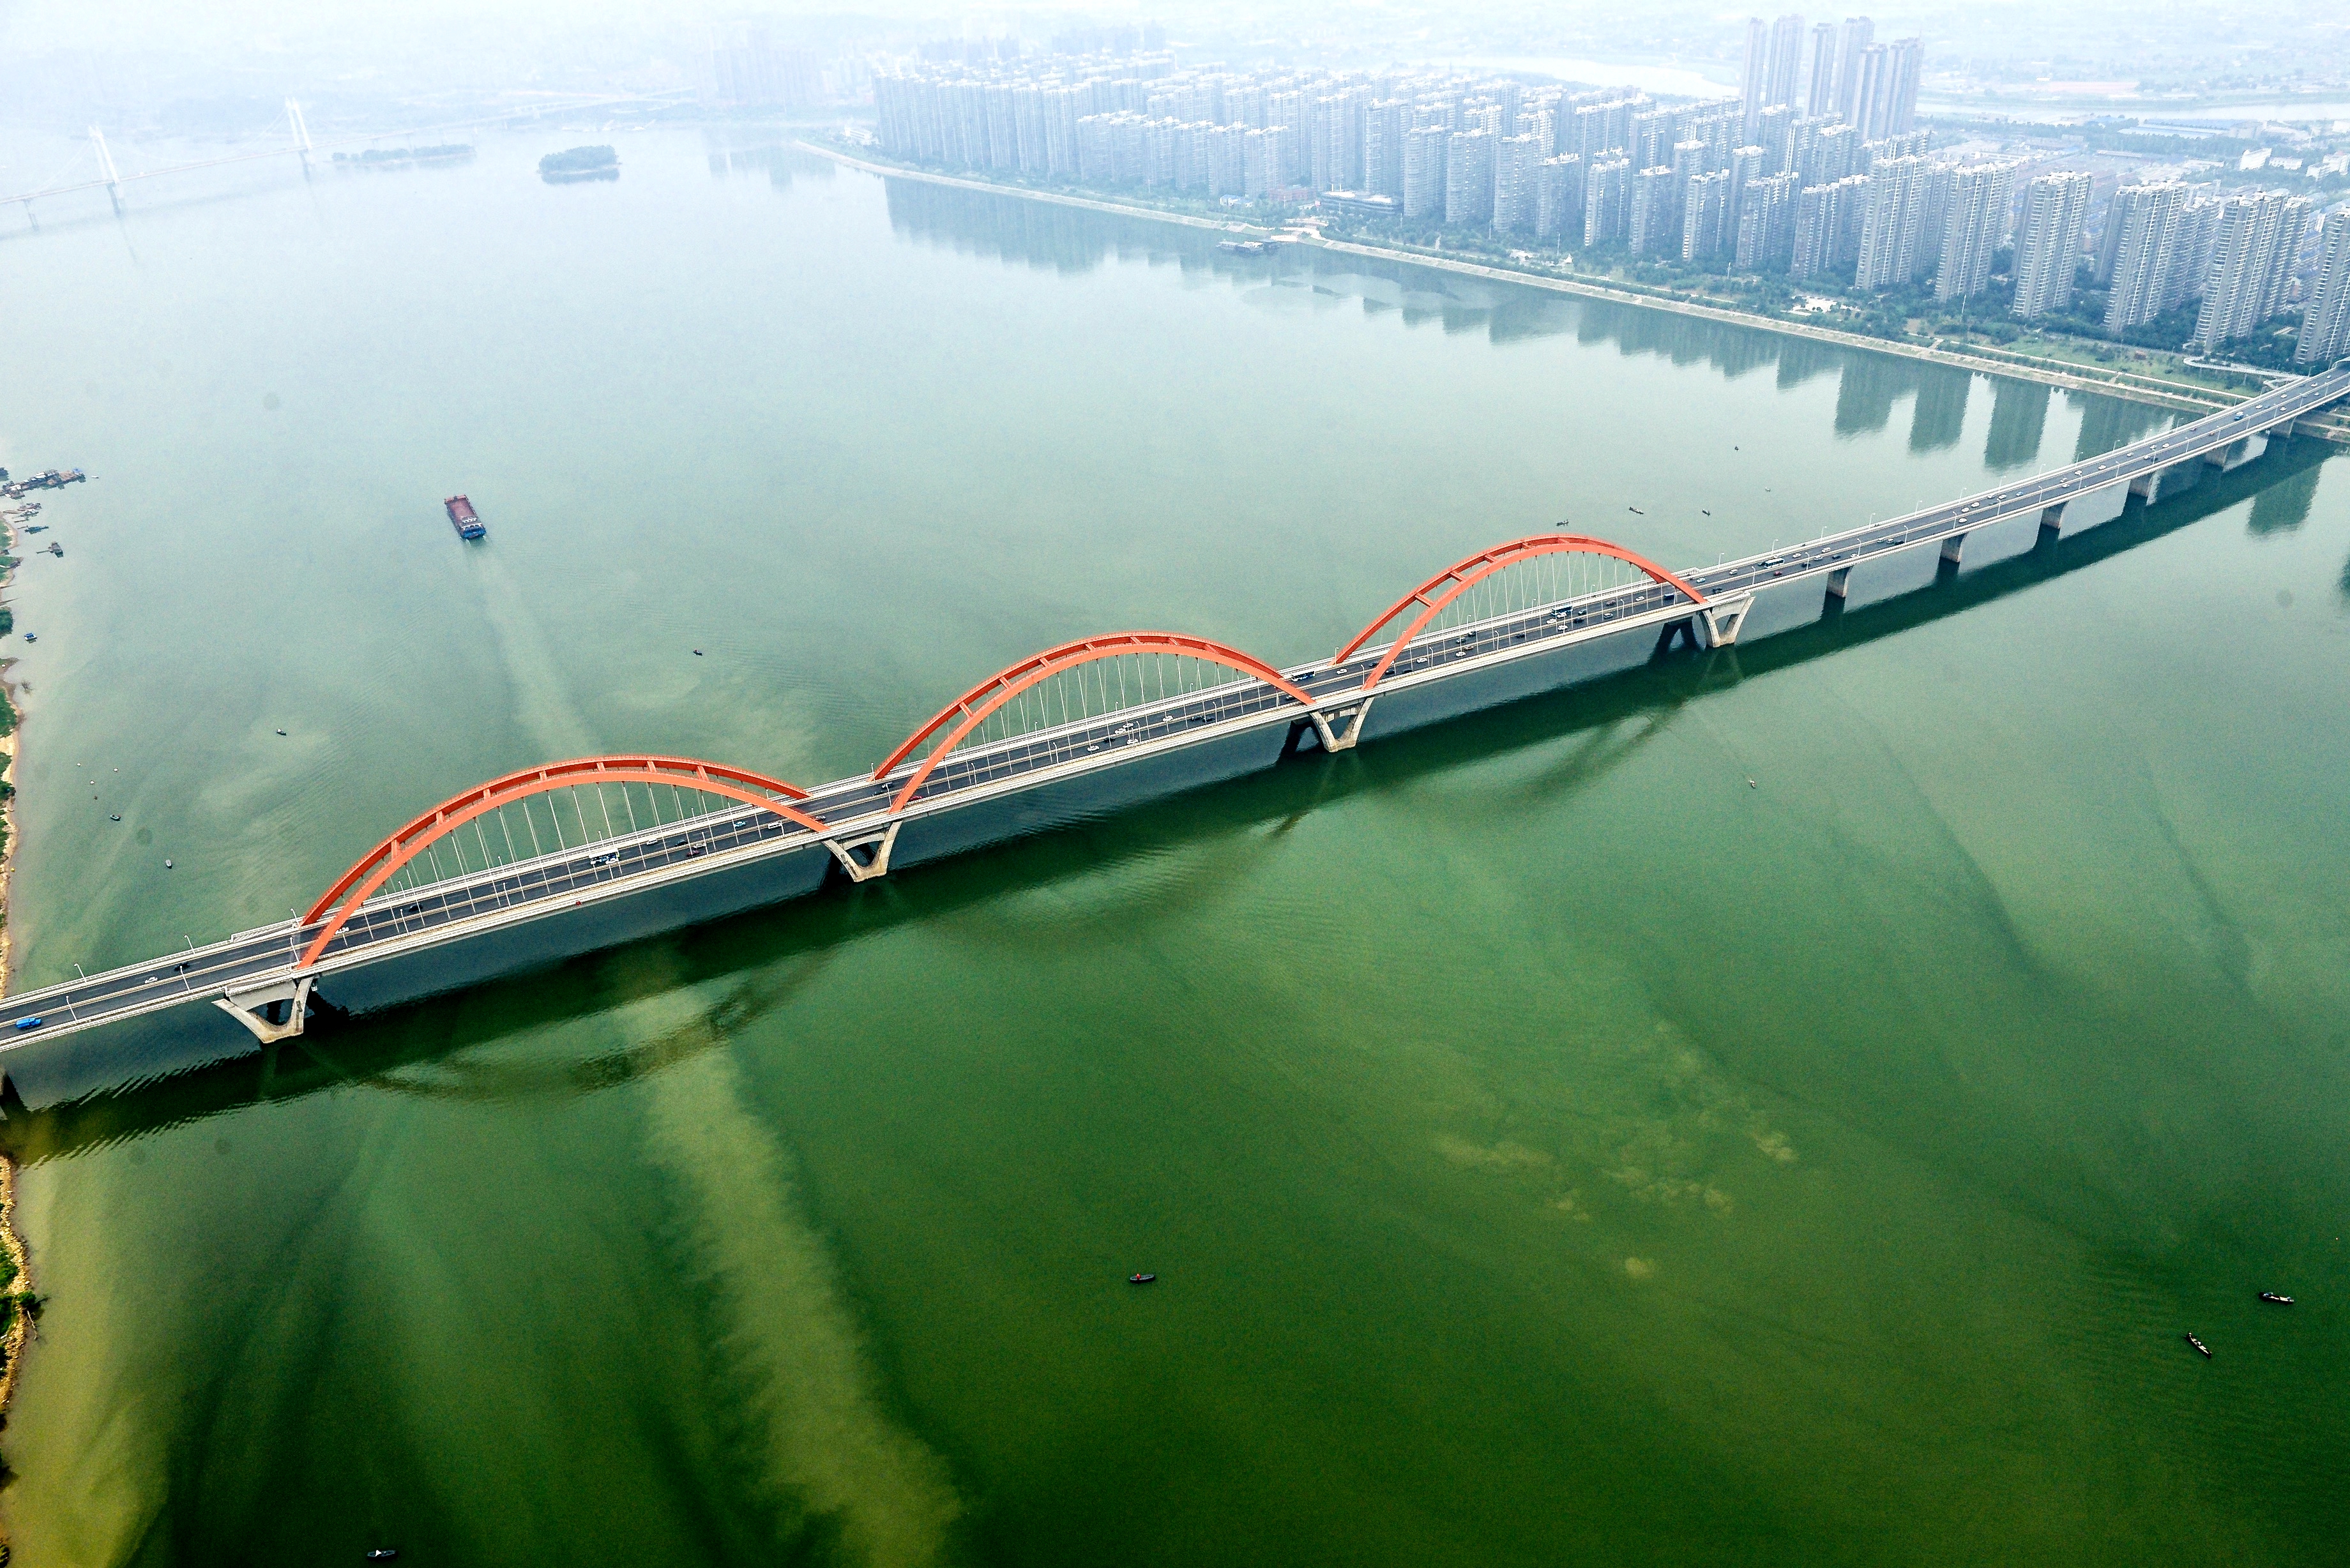 以福元路大桥为界，湘江世纪城将被分为南北两个物业片区，成立业委会精细治理。 长沙晚报全媒体记者 陈飞 摄